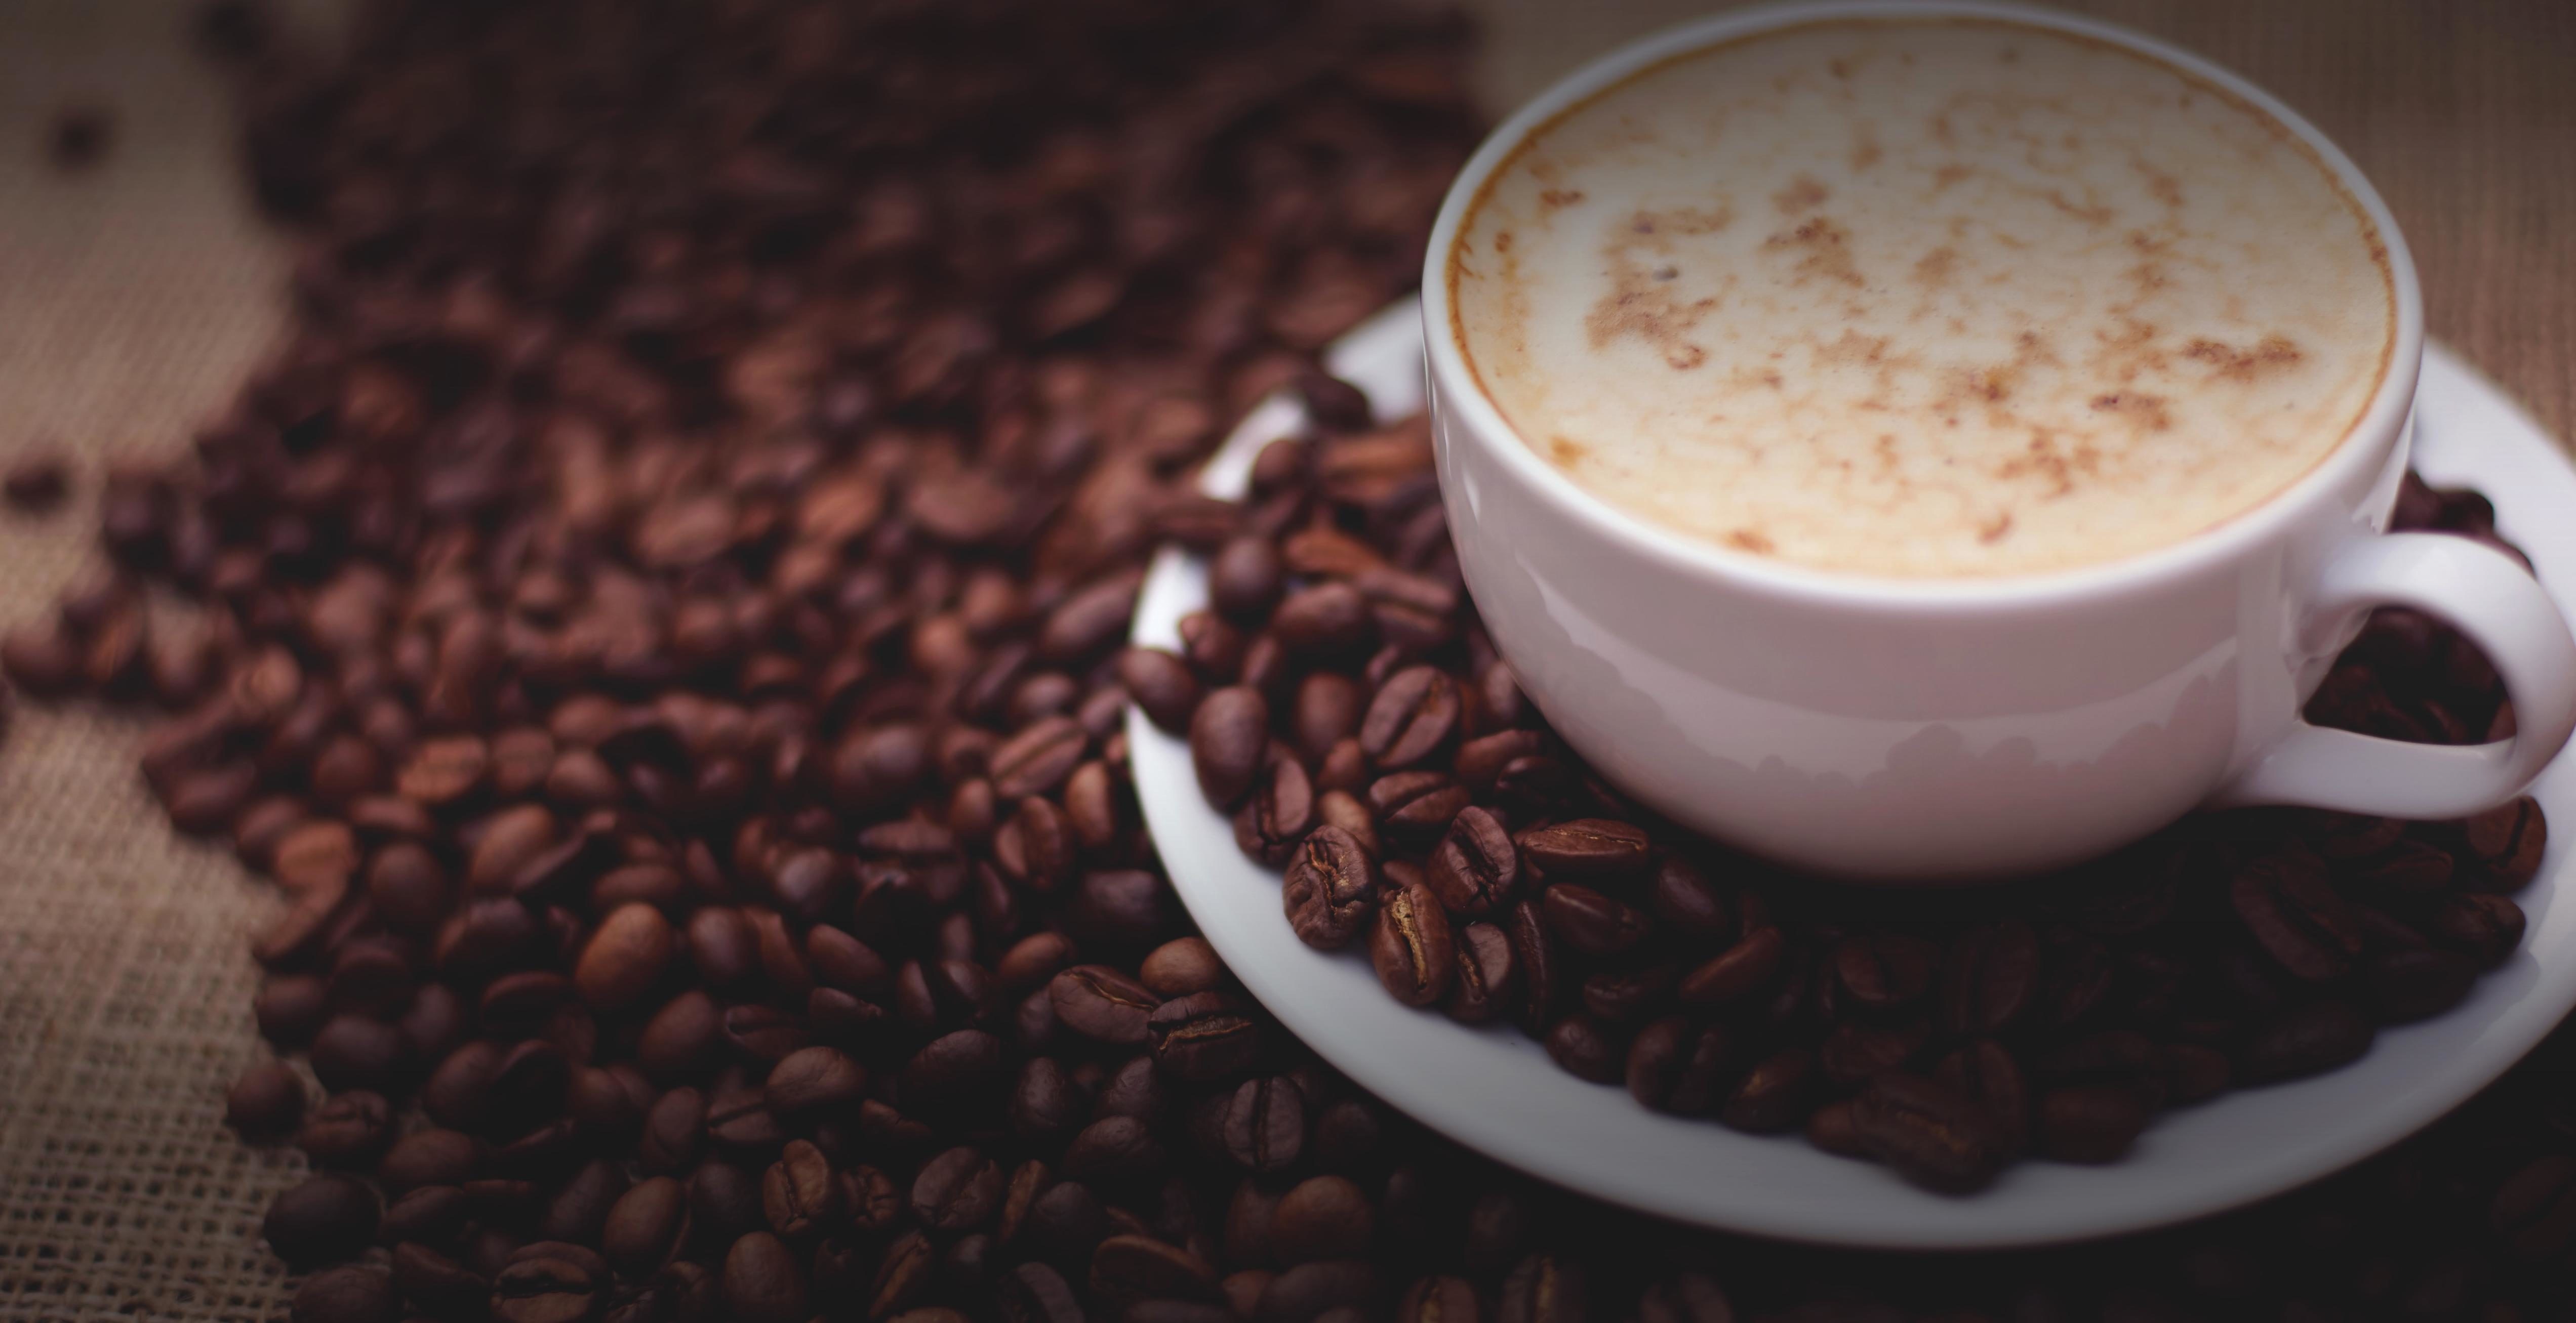 フリー写真画像 コーヒー カフェイン ドリンク エスプレッソ コーヒー豆 カプチーノ 夜明け 暗い